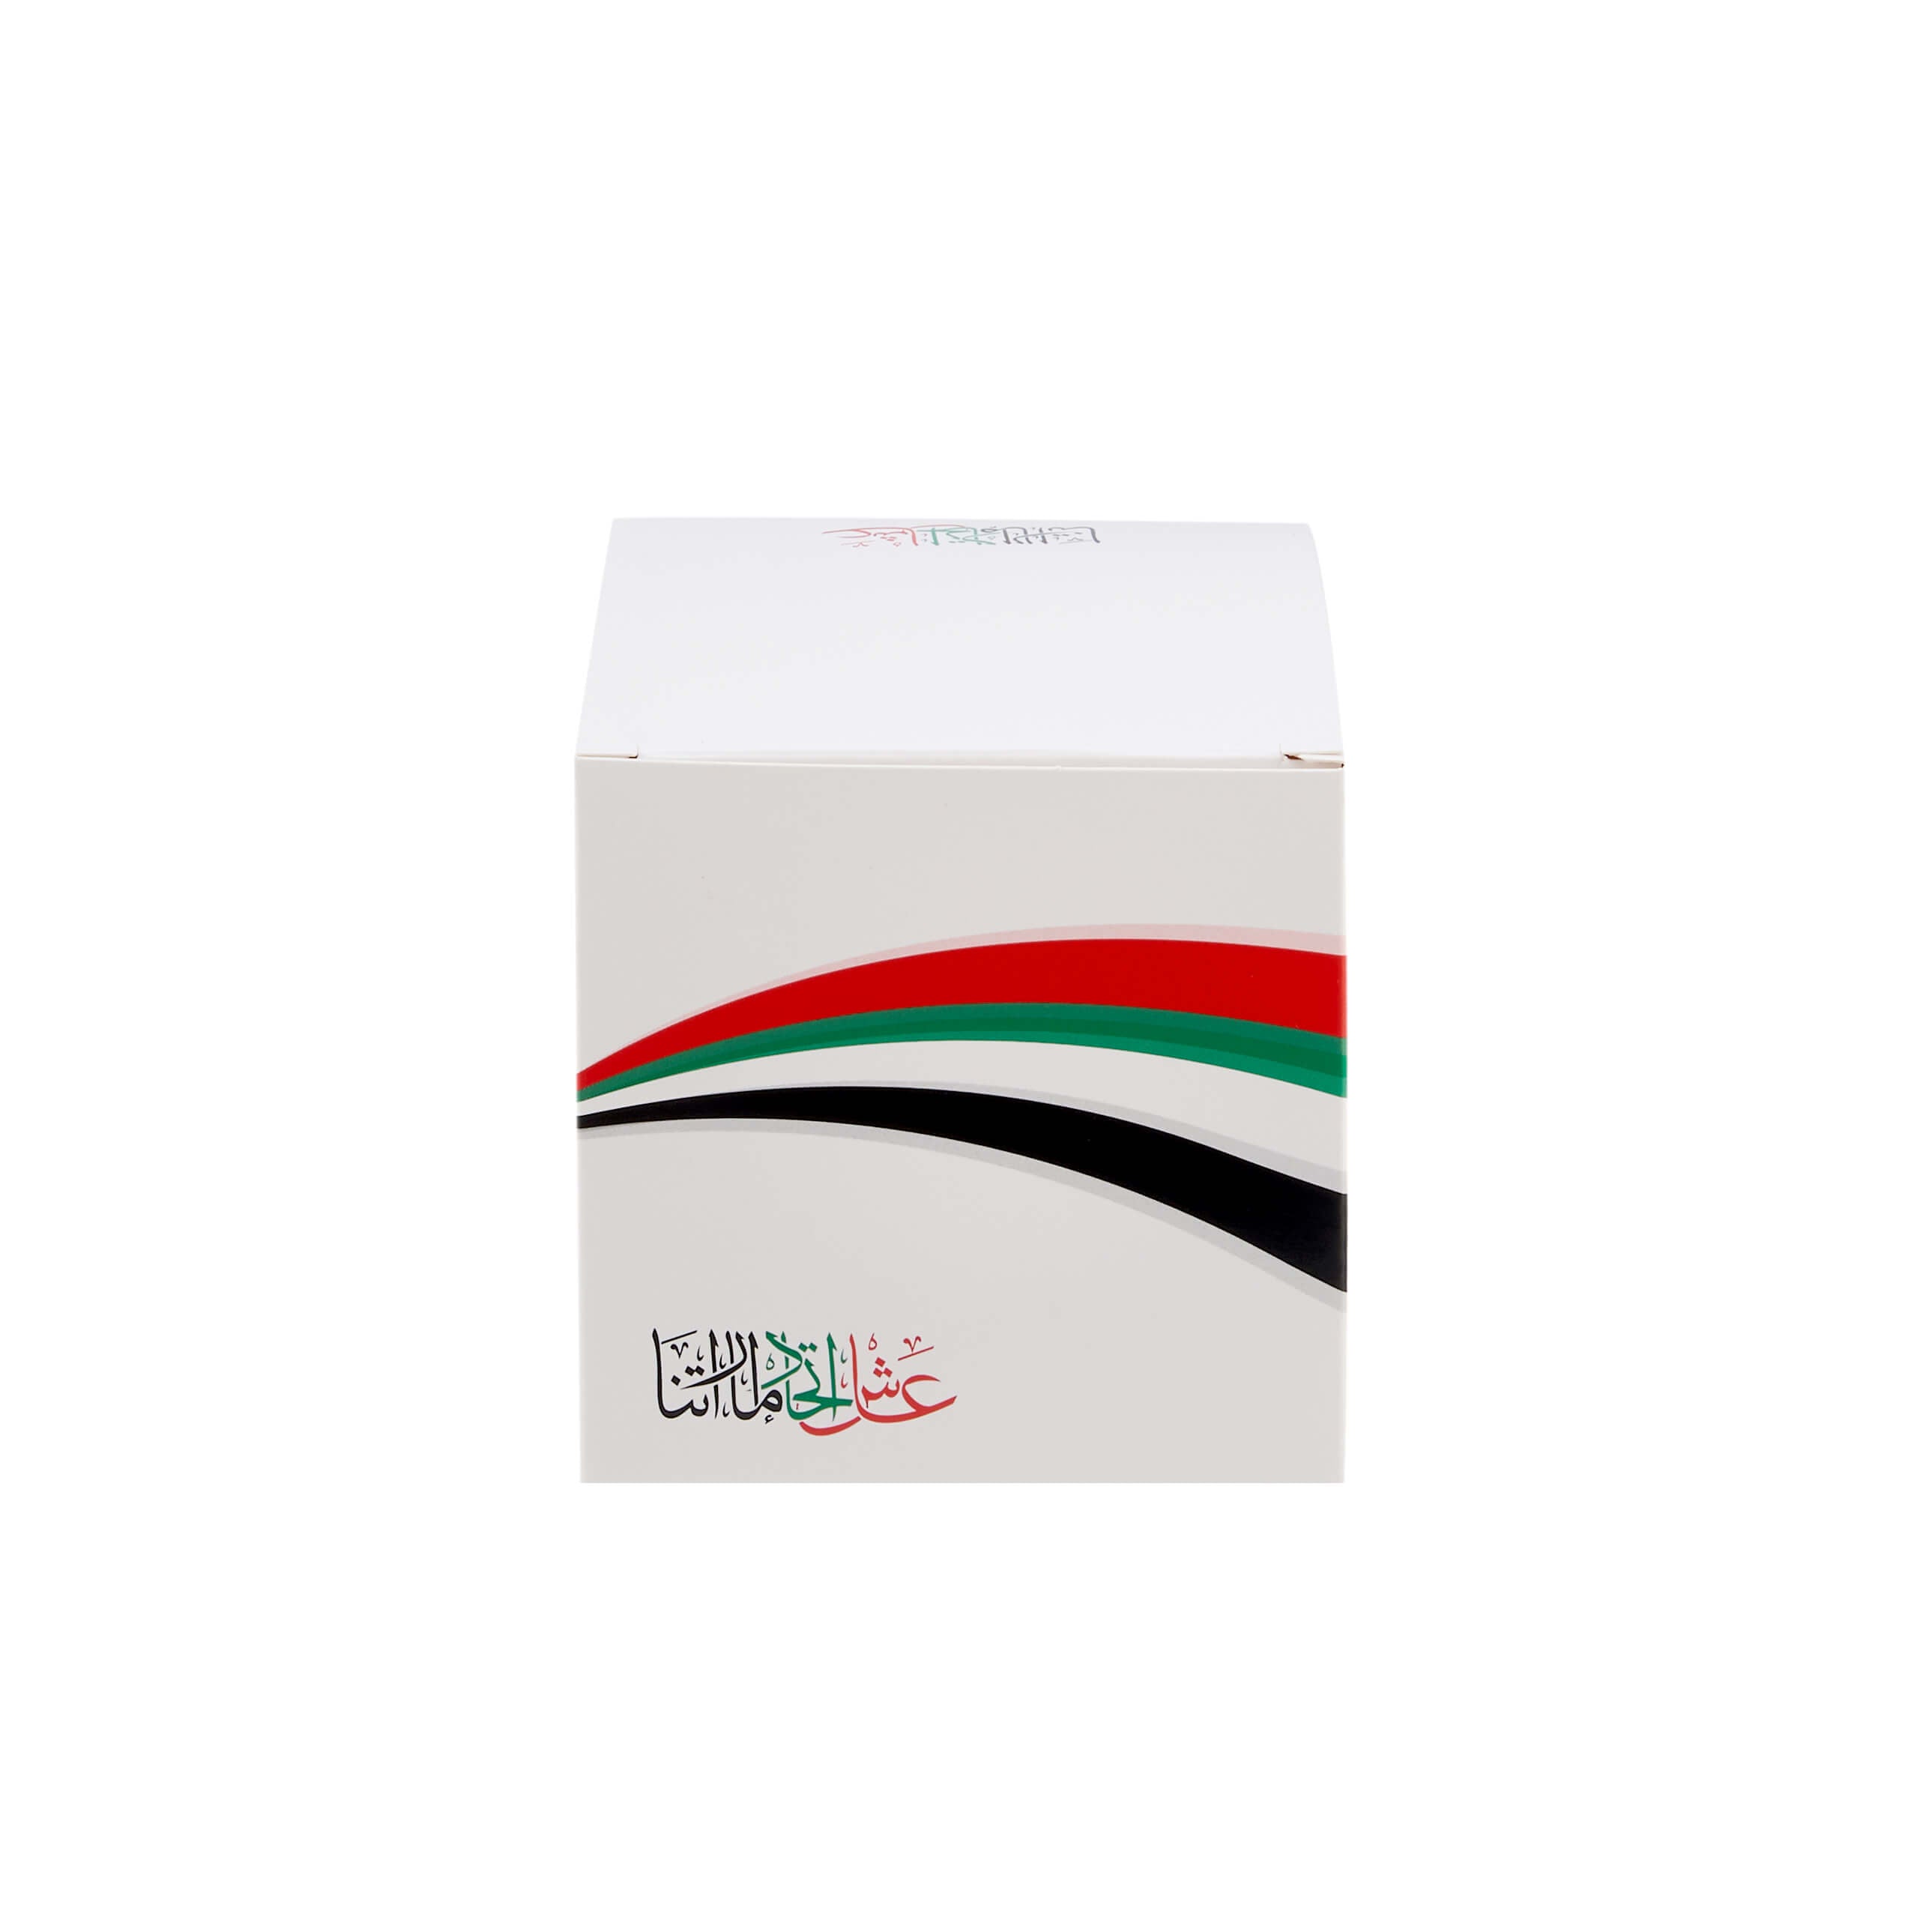 UAE National Day Gifting box - Hotpack Global